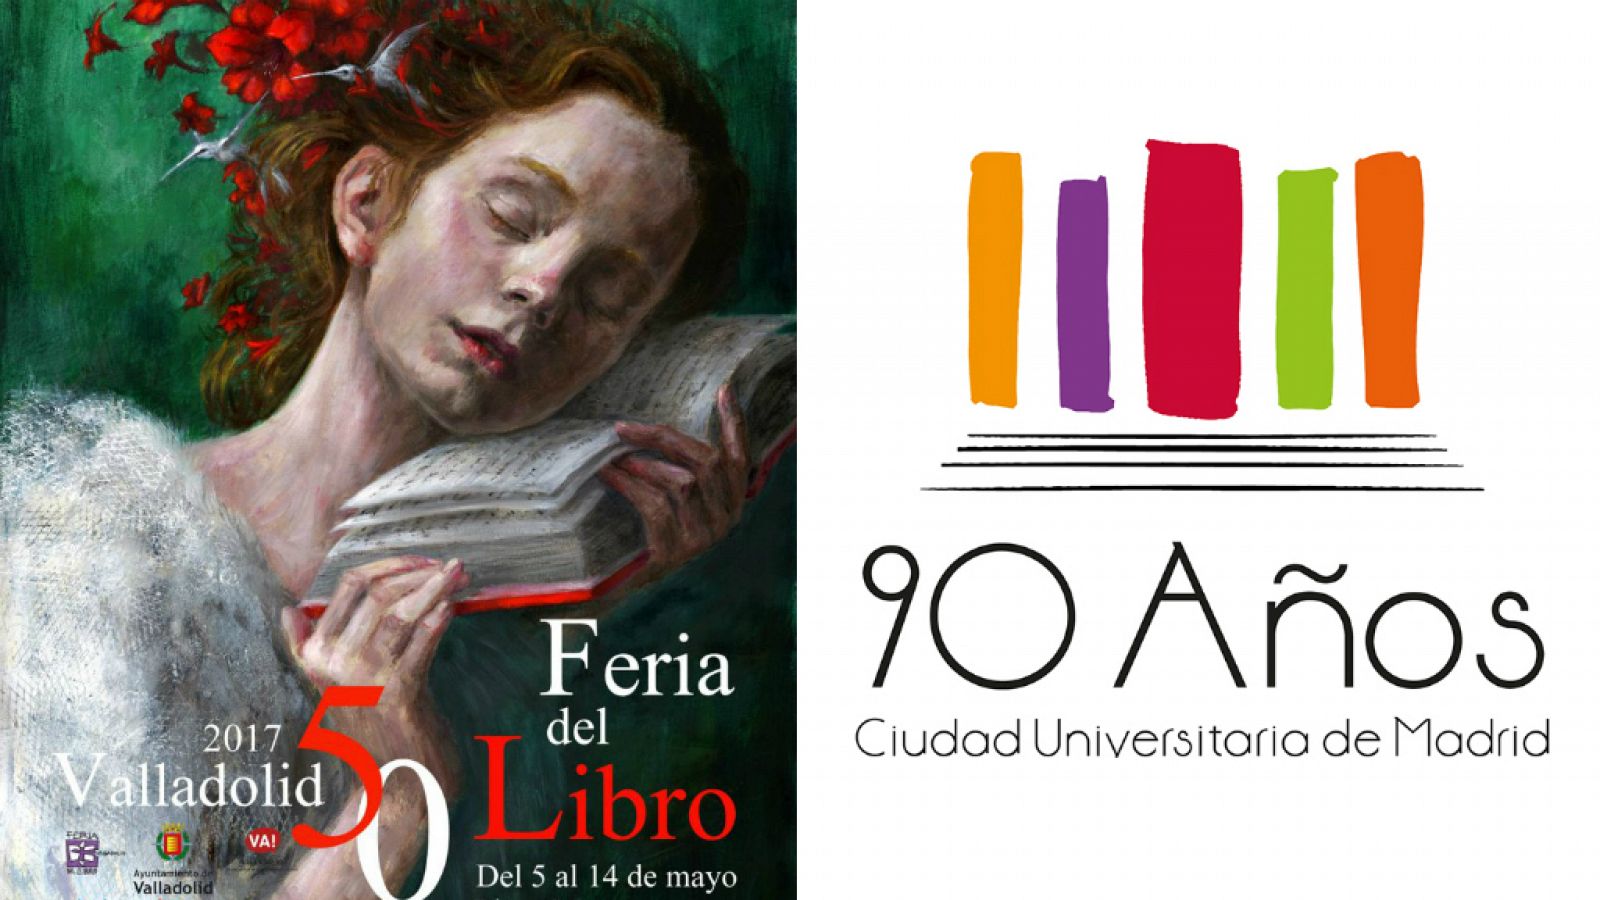 Feria del Libro de Valladolid y Universidad Complutense de Madrid